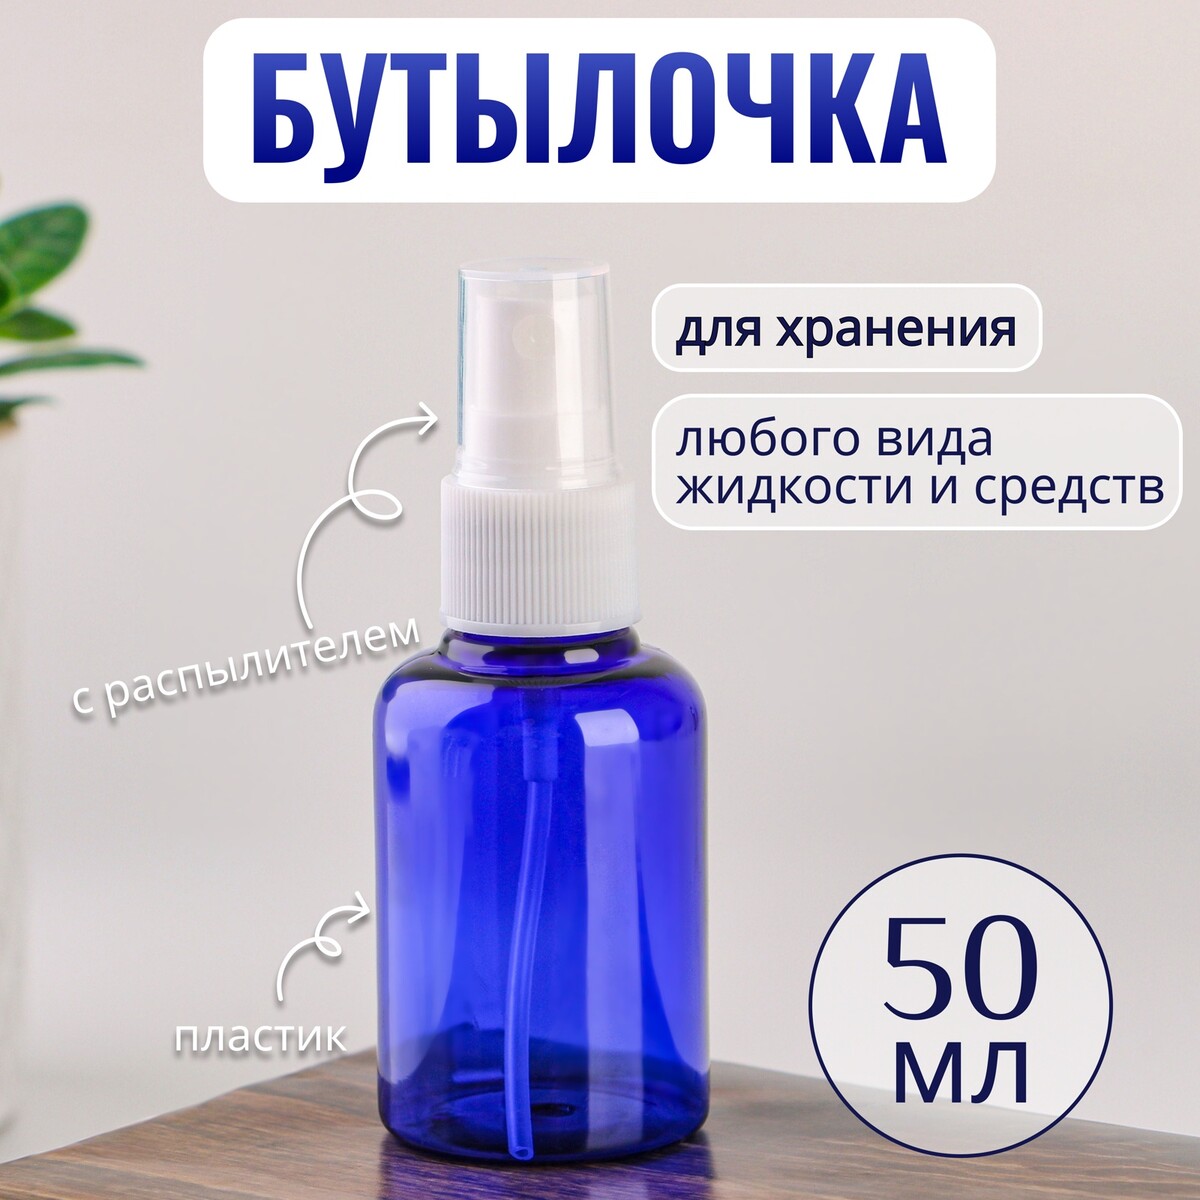 Бутылочка для хранения, с распылителем, 50 мл, цвет синий/белый ONLITOP